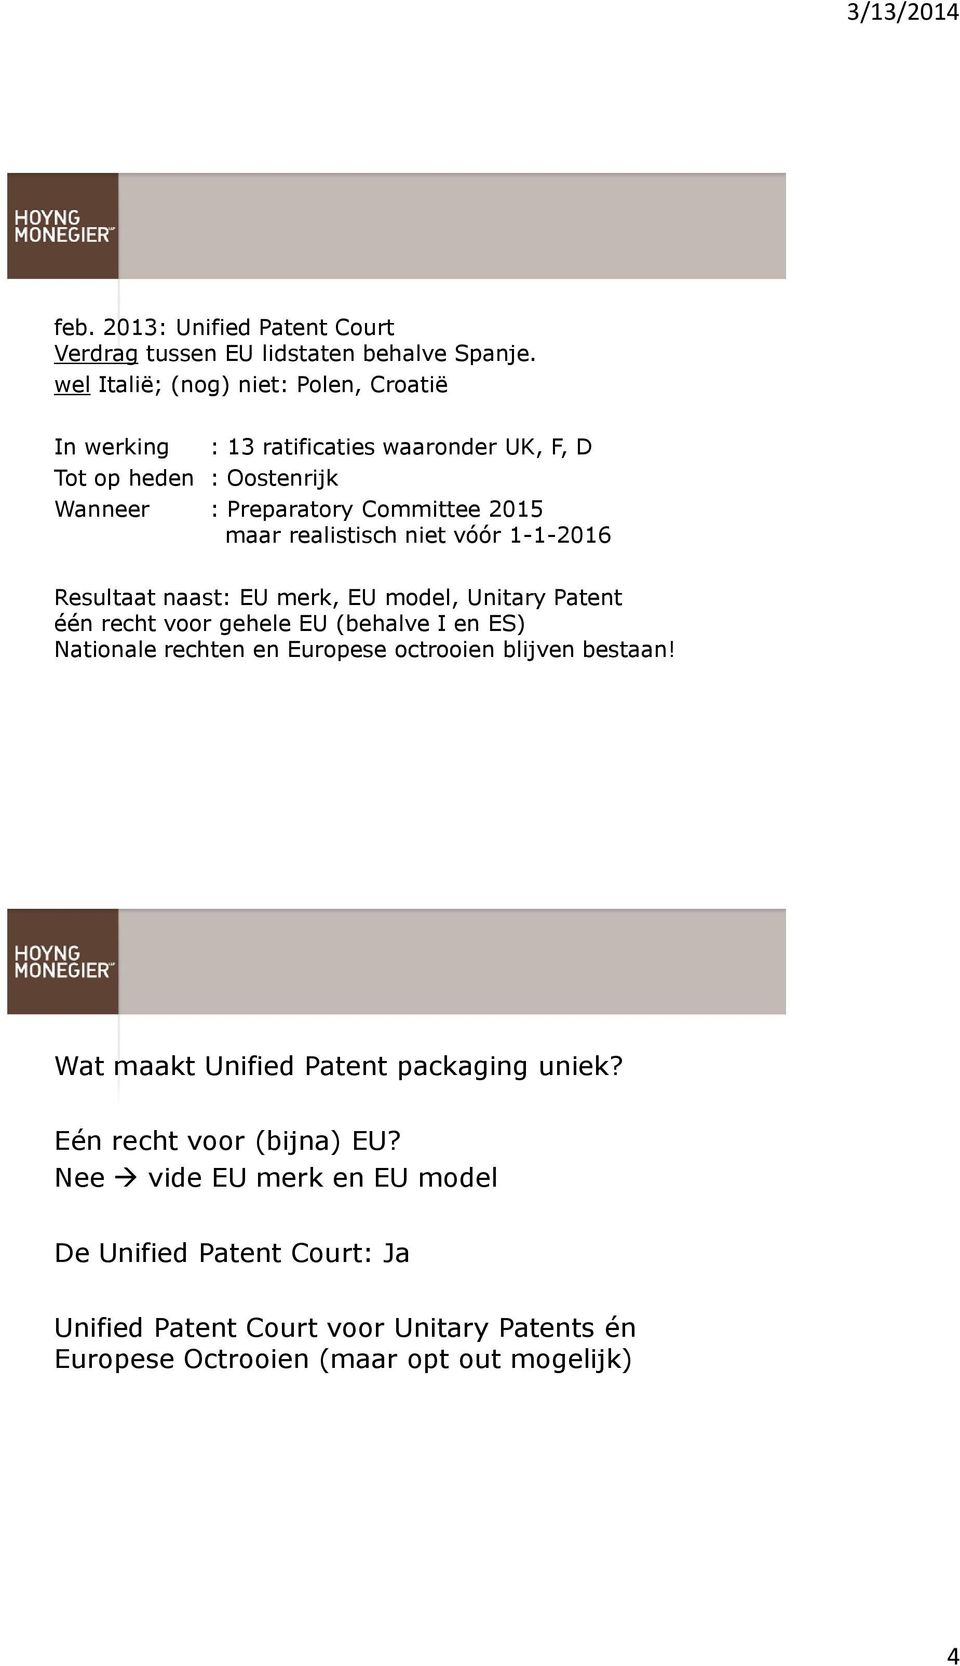 realistisch niet vóór 1-1-2016 Resultaat naast: EU merk, EU model, Unitary Patent één recht voor gehele EU (behalve I en ES) Nationale rechten en Europese